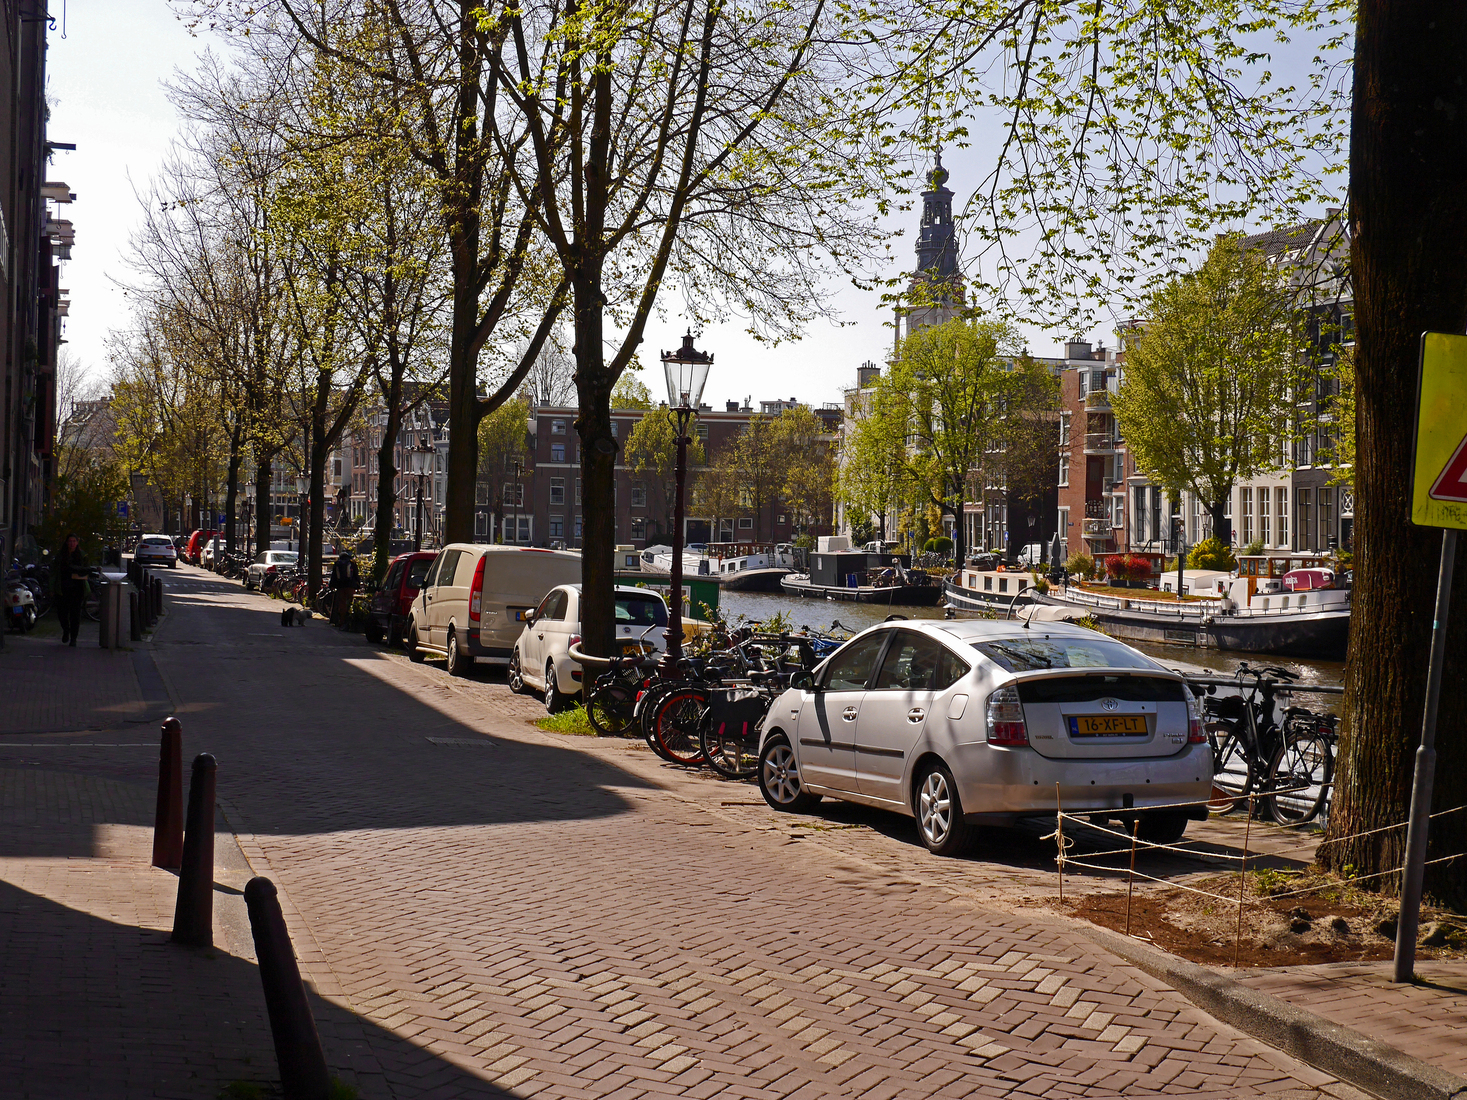 Uitzicht over het water van de Oudeschans met zijn vele woonboten; foto Amsterdam / Mokum voor een print